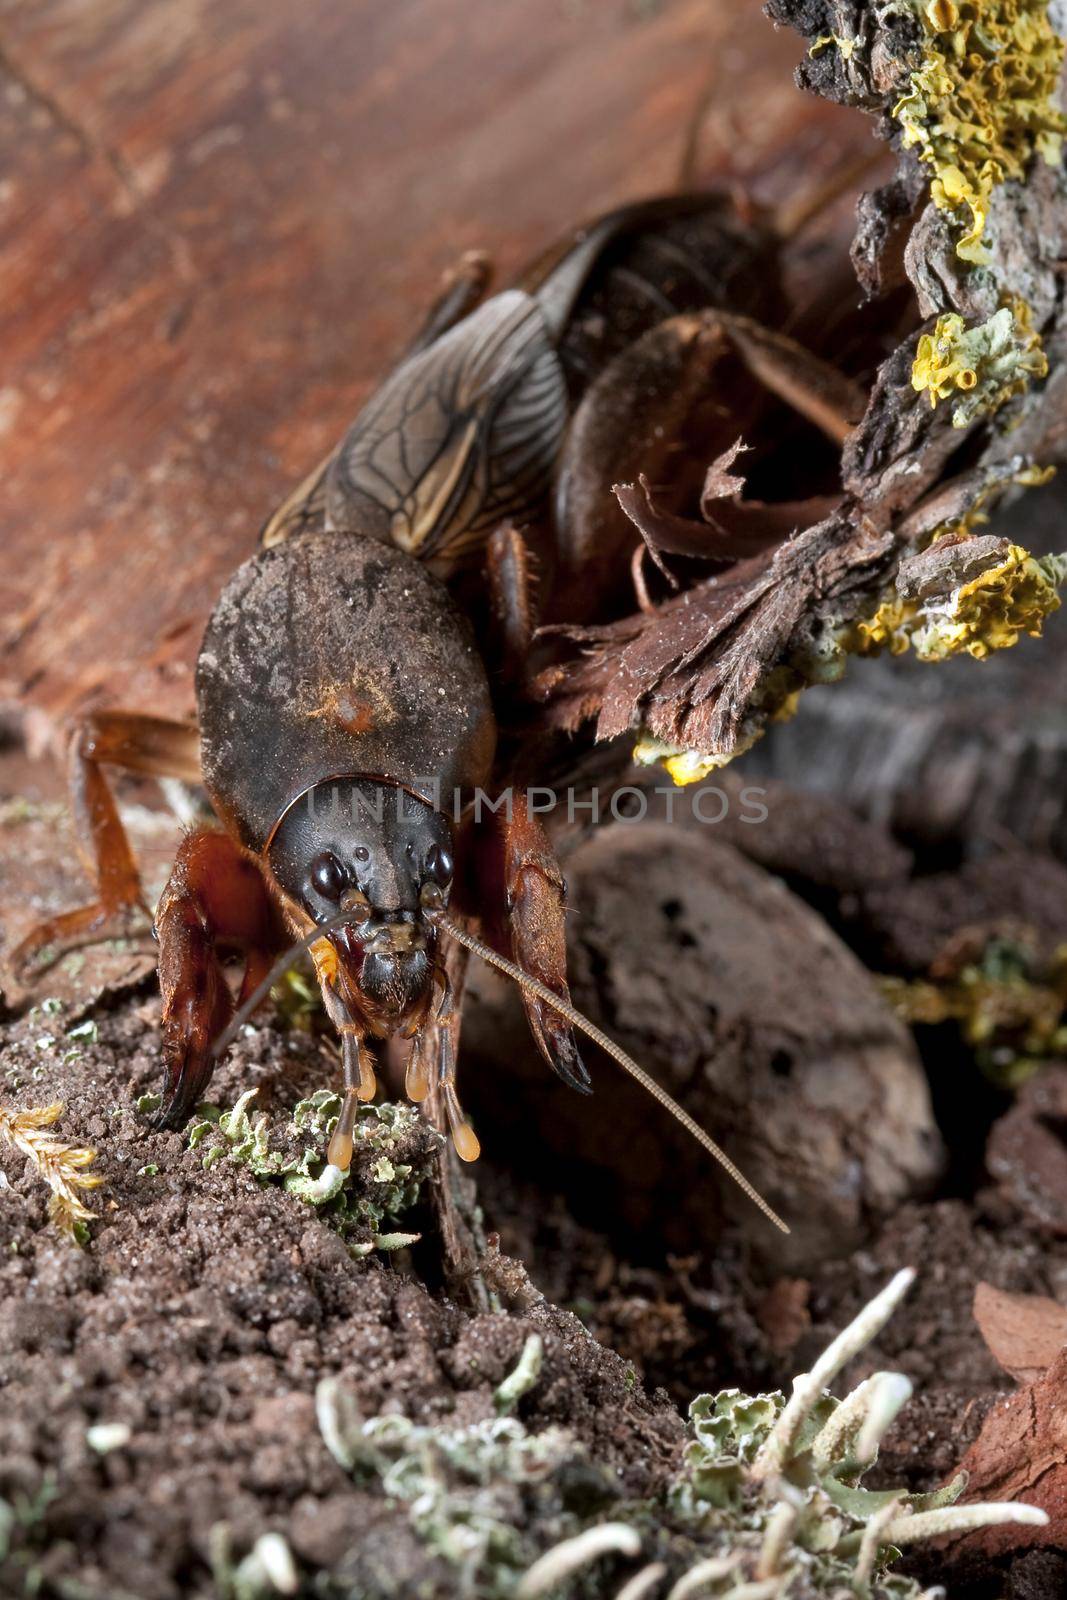 Mole Cricket on mossy peel is diging soil